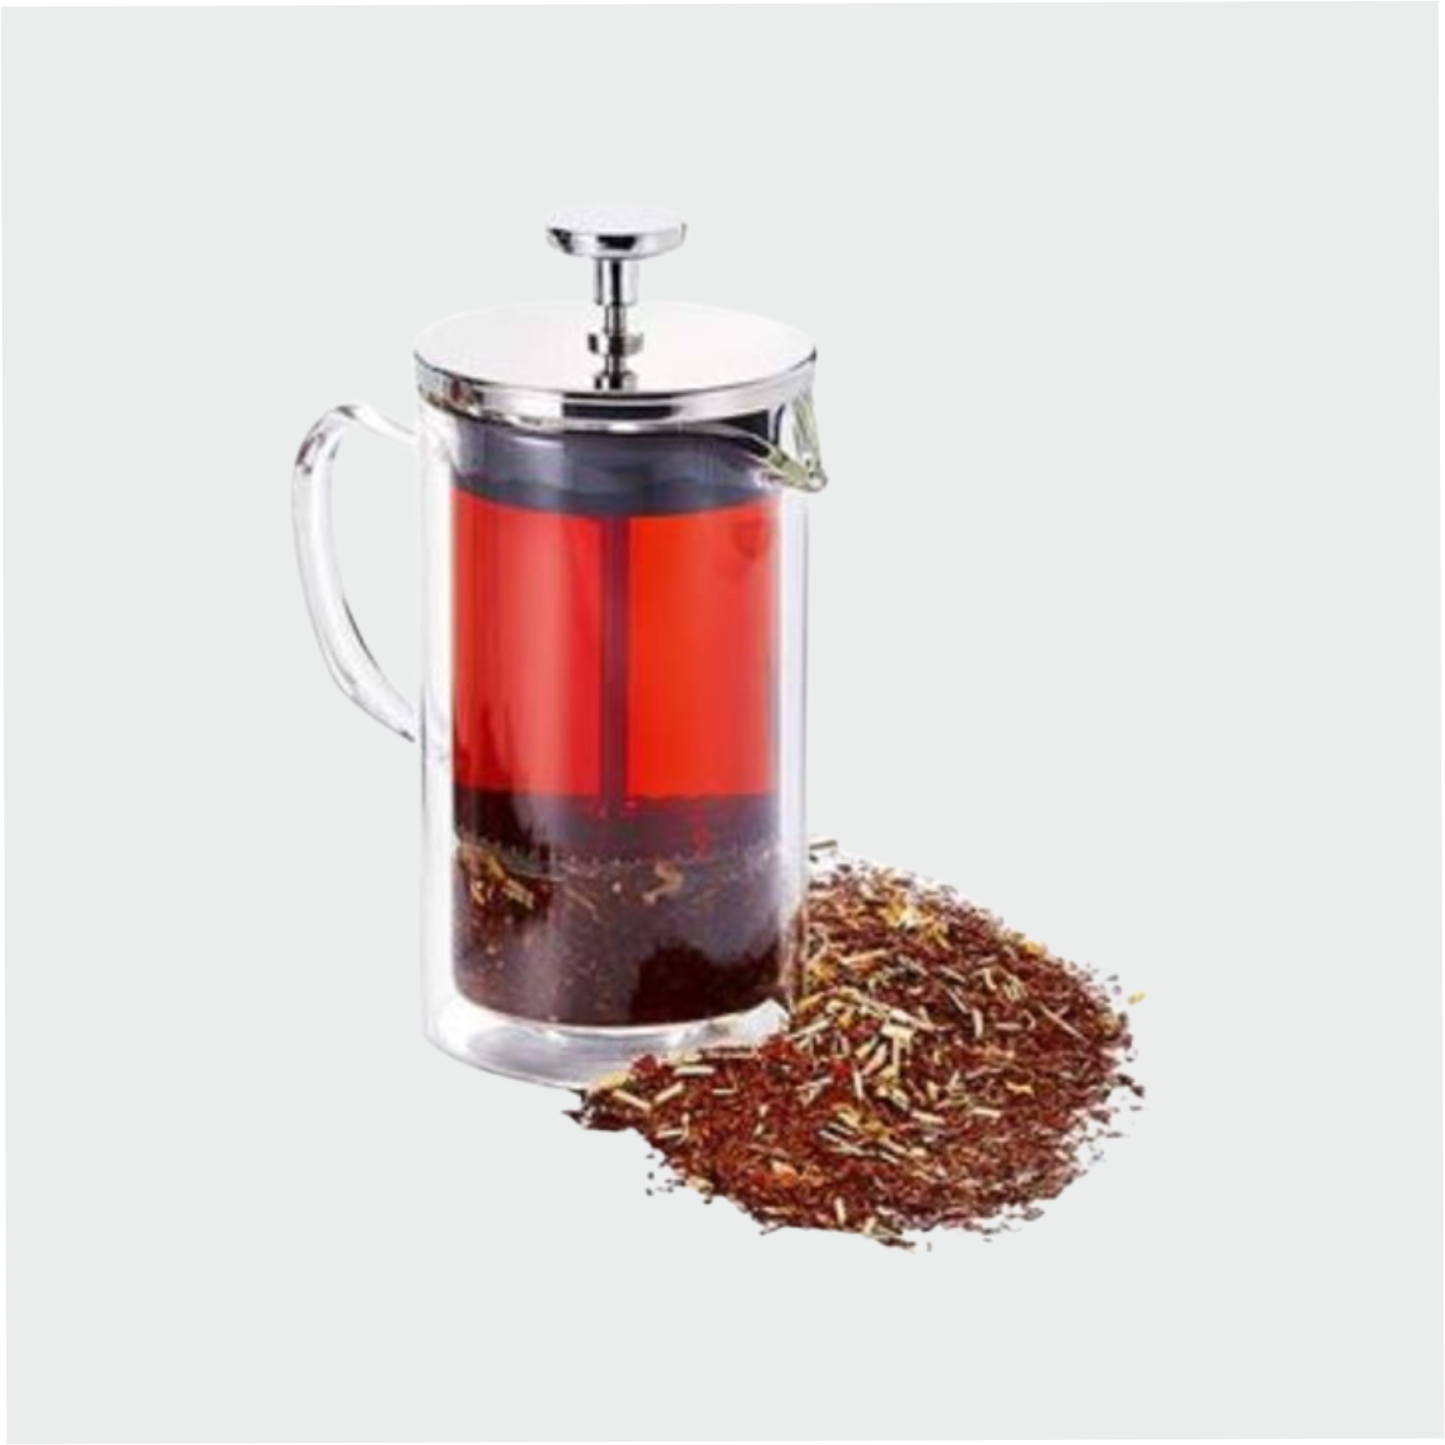 Tee-/Kaffeezubereiter "Malte" von Cha Cult, Glas, doppelwandig 2 Tassen, ca. 0,35 l